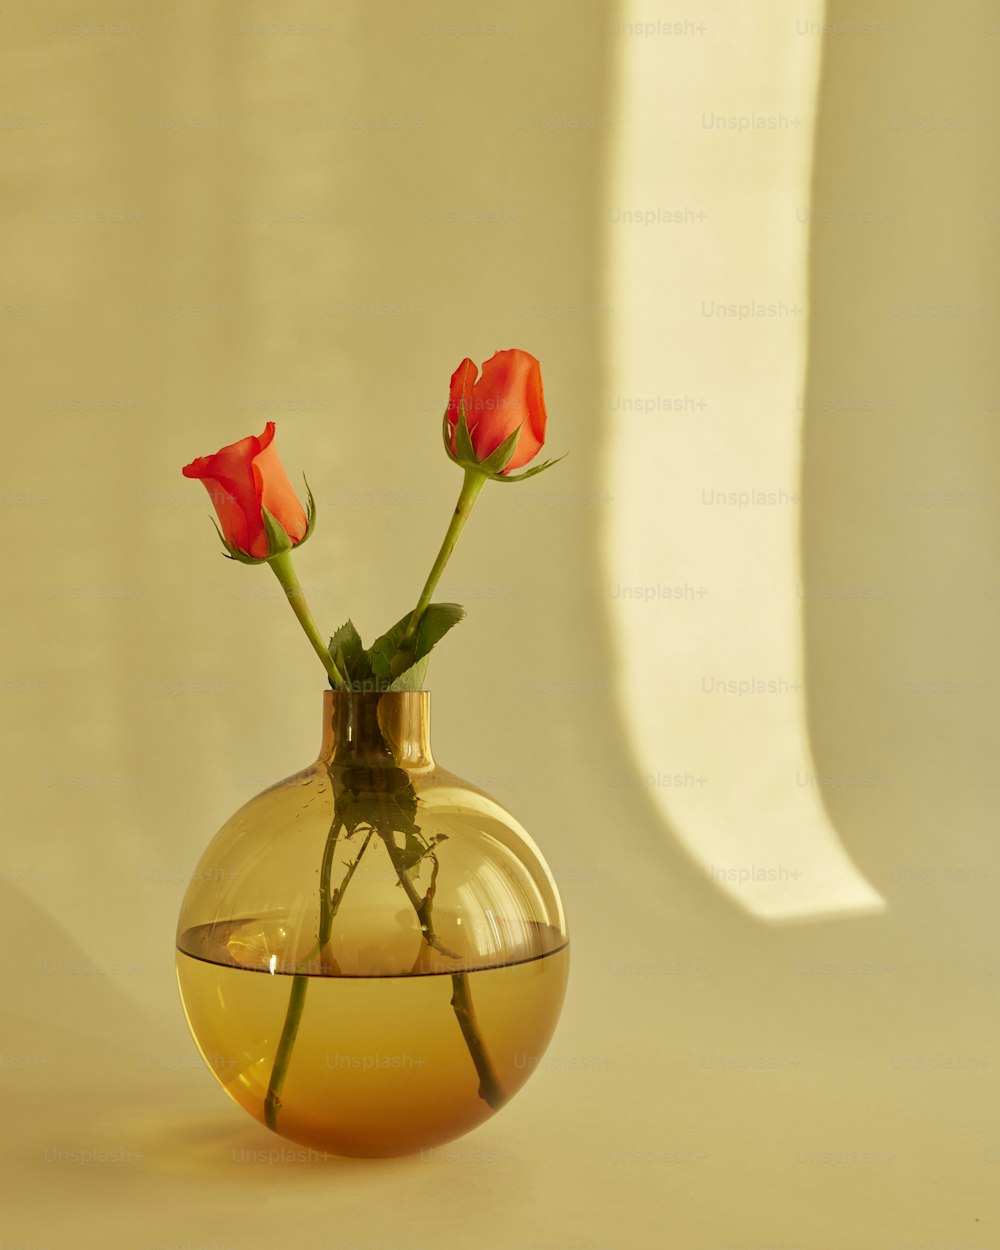 3本の赤いバラが入ったガラスの花瓶